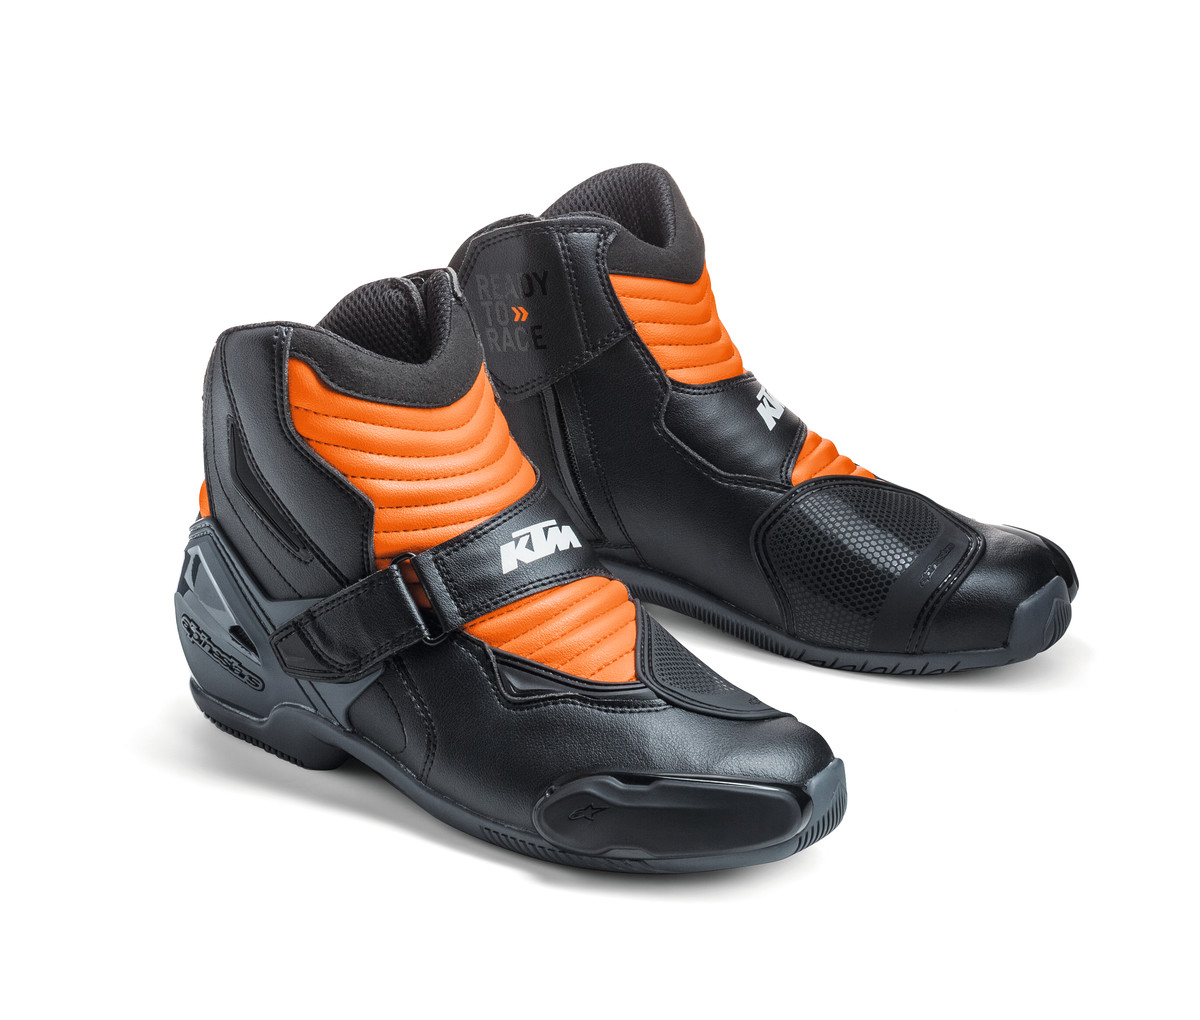 S-MX 1 R Shoes Shoe size 39